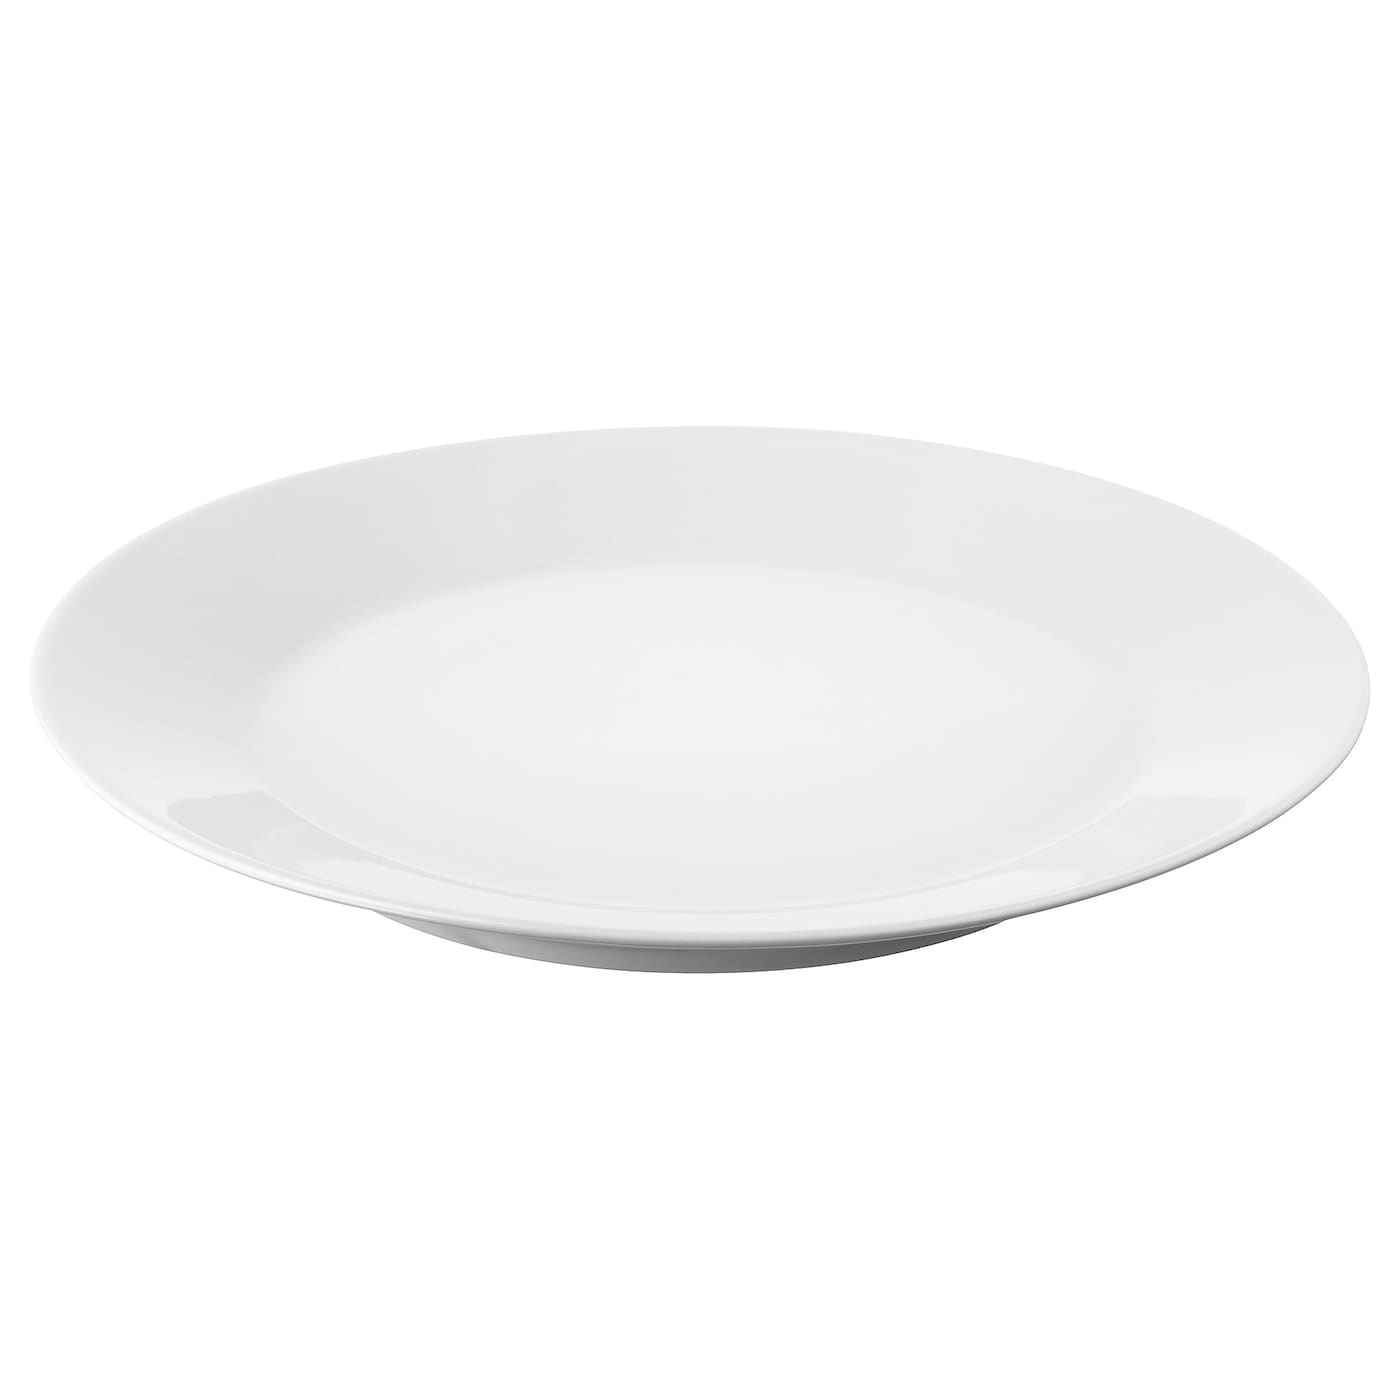 Тарелка - IKEA 365+, 20 см, белый, ИКЕА 365+